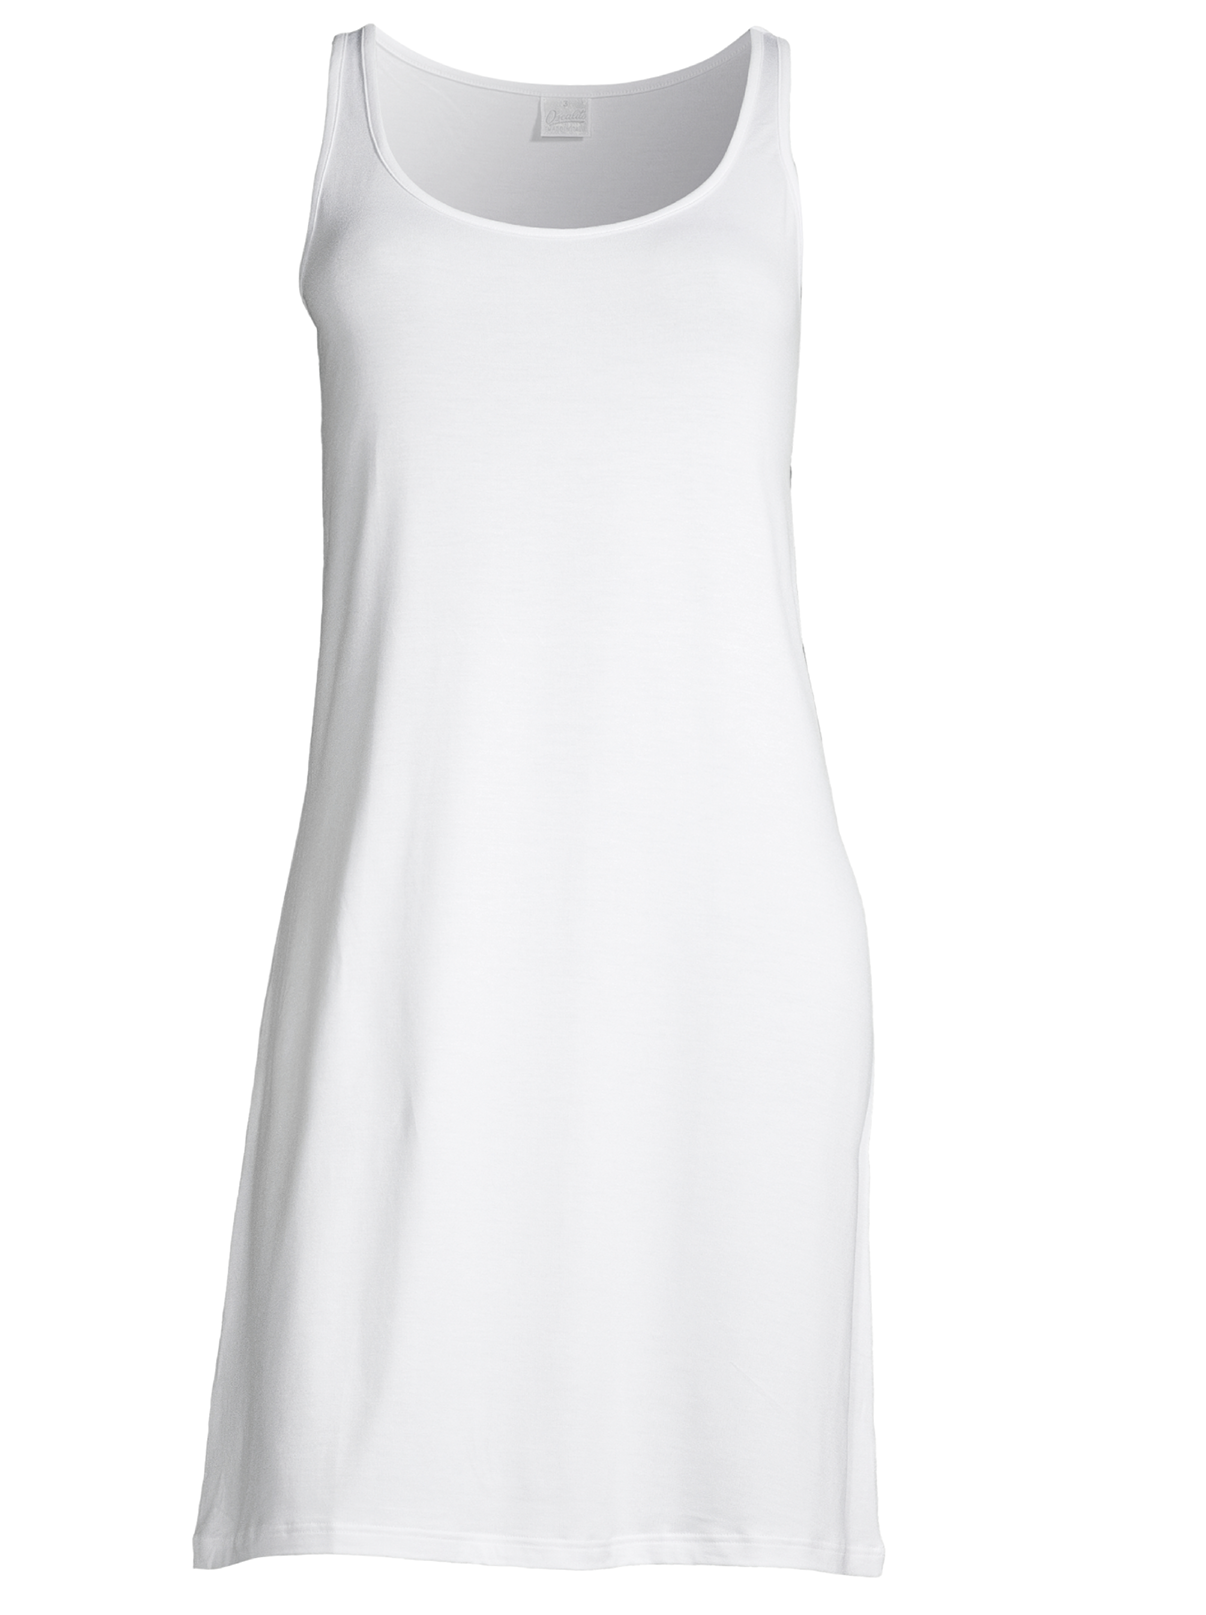 Mini dress in micromodal white